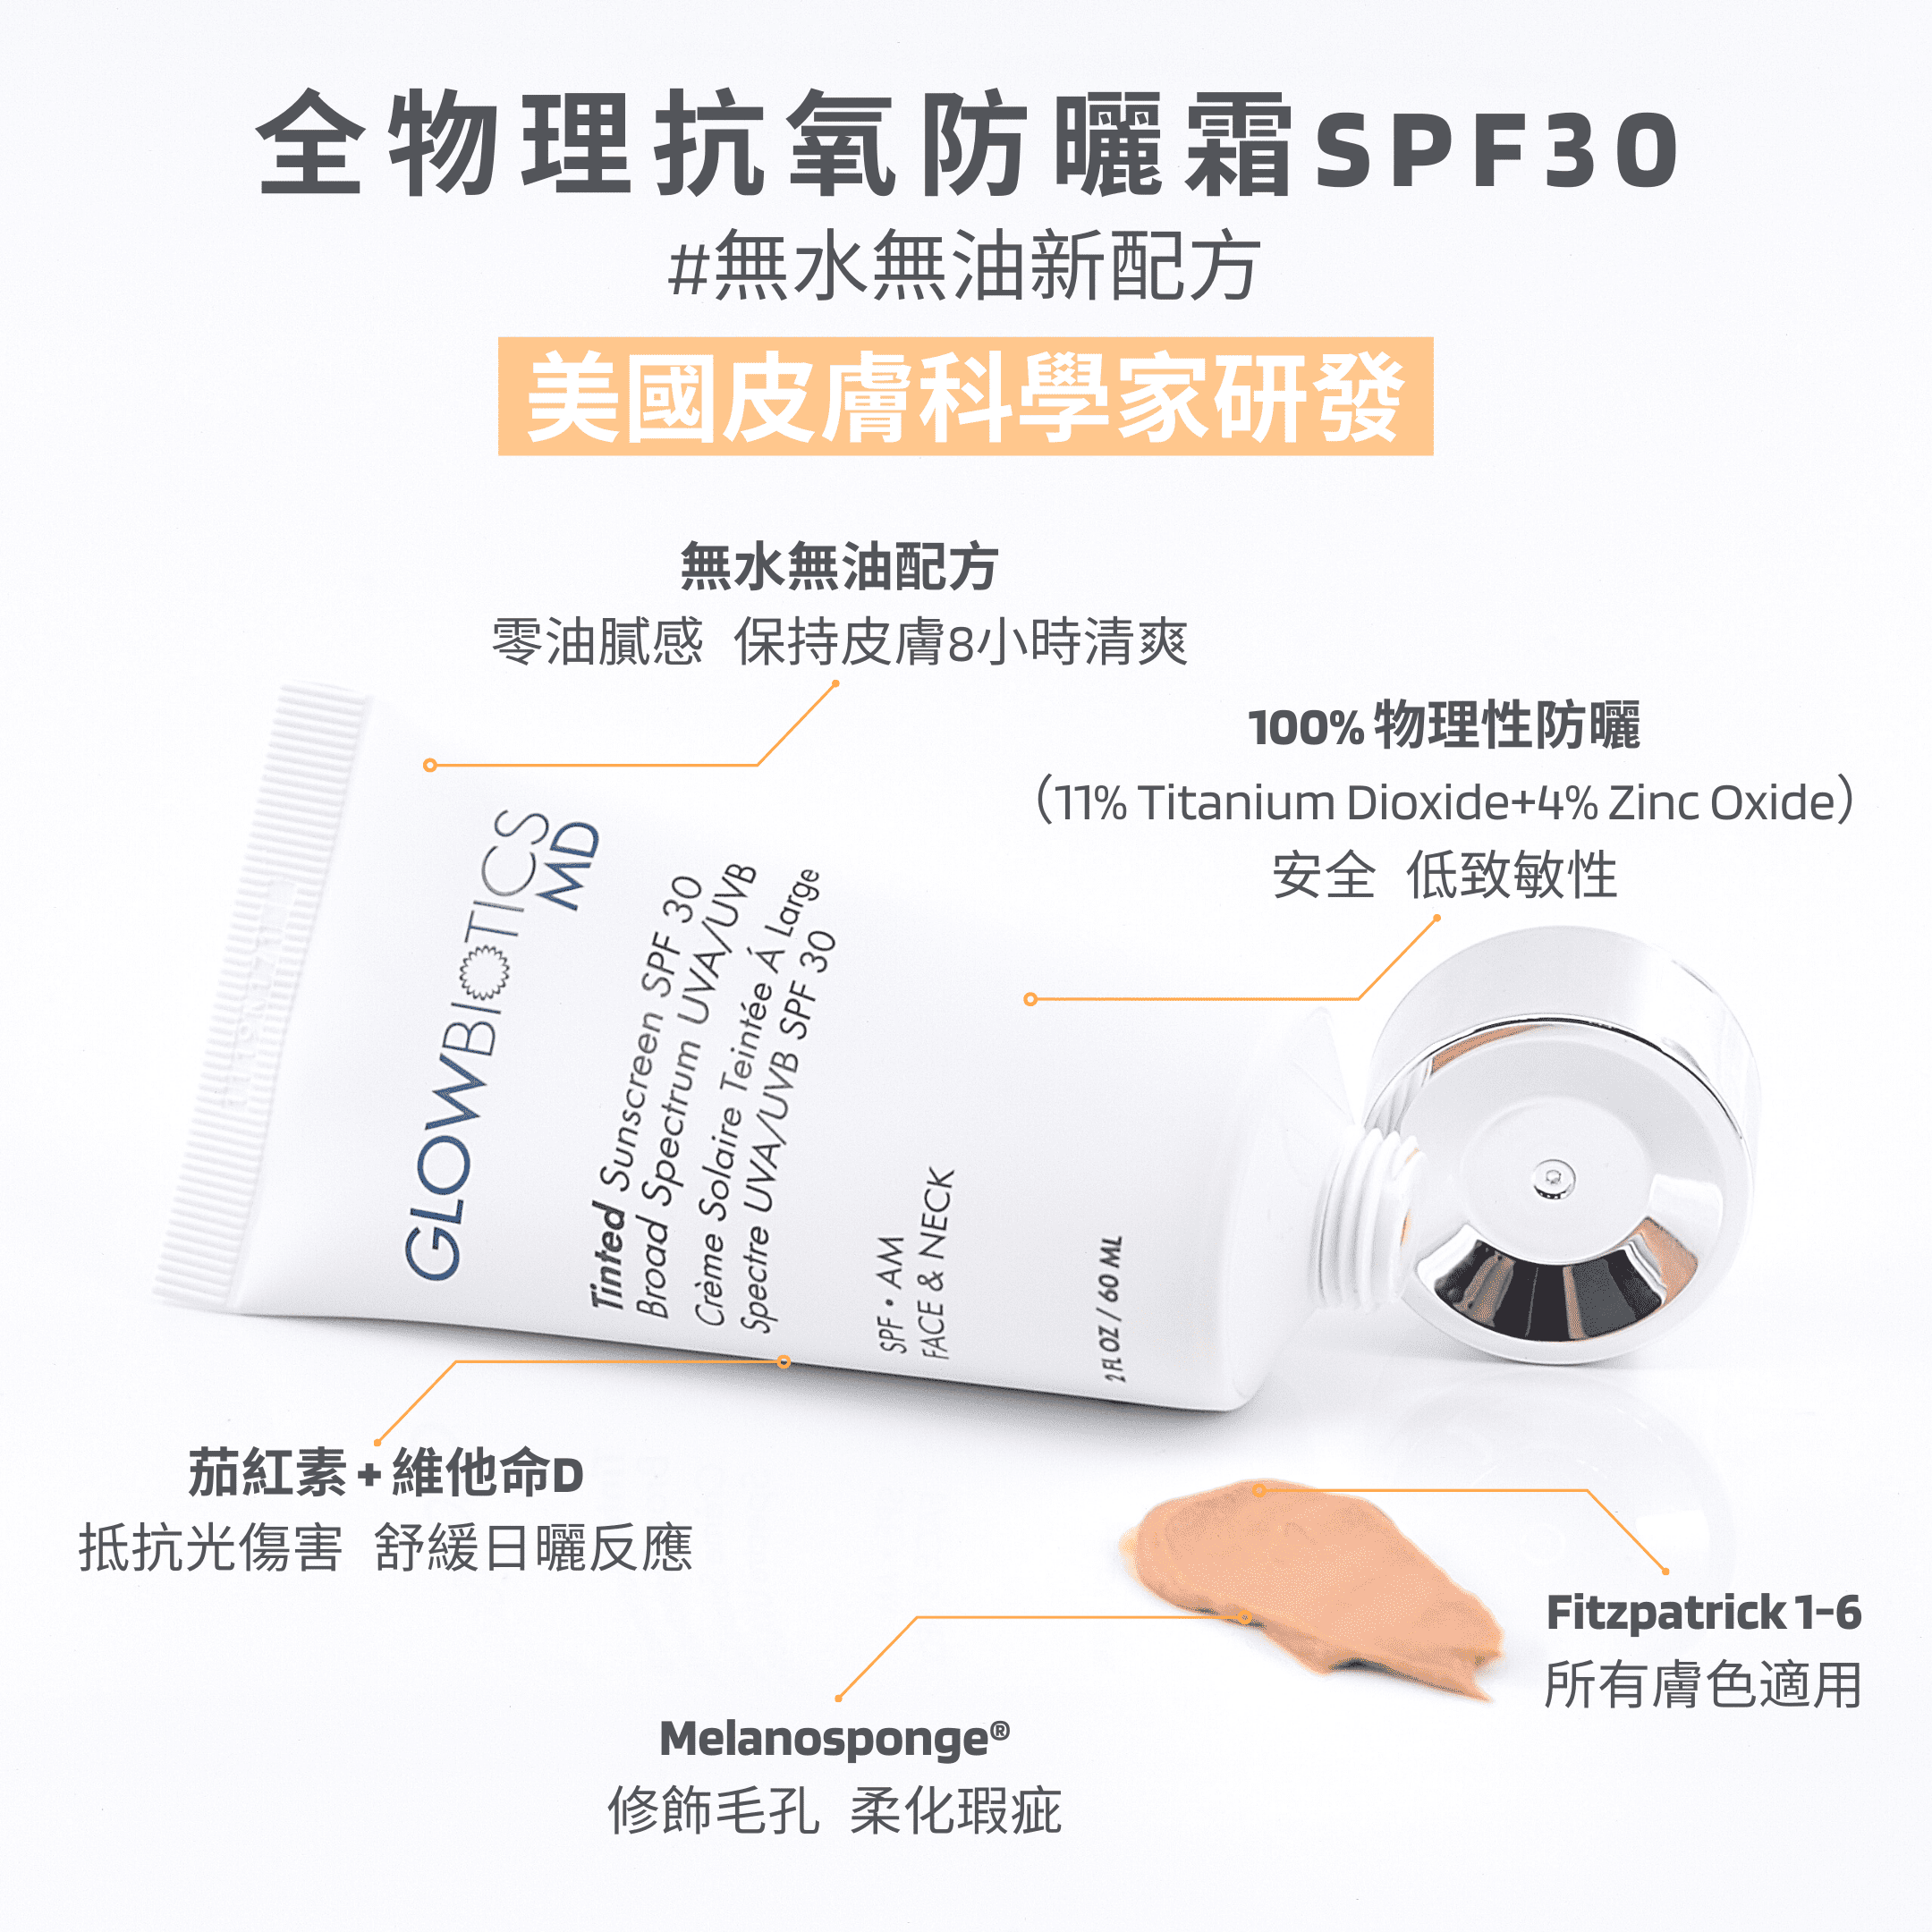 全物理抗氧防曬霜SPF30 - Glowbiotics HK